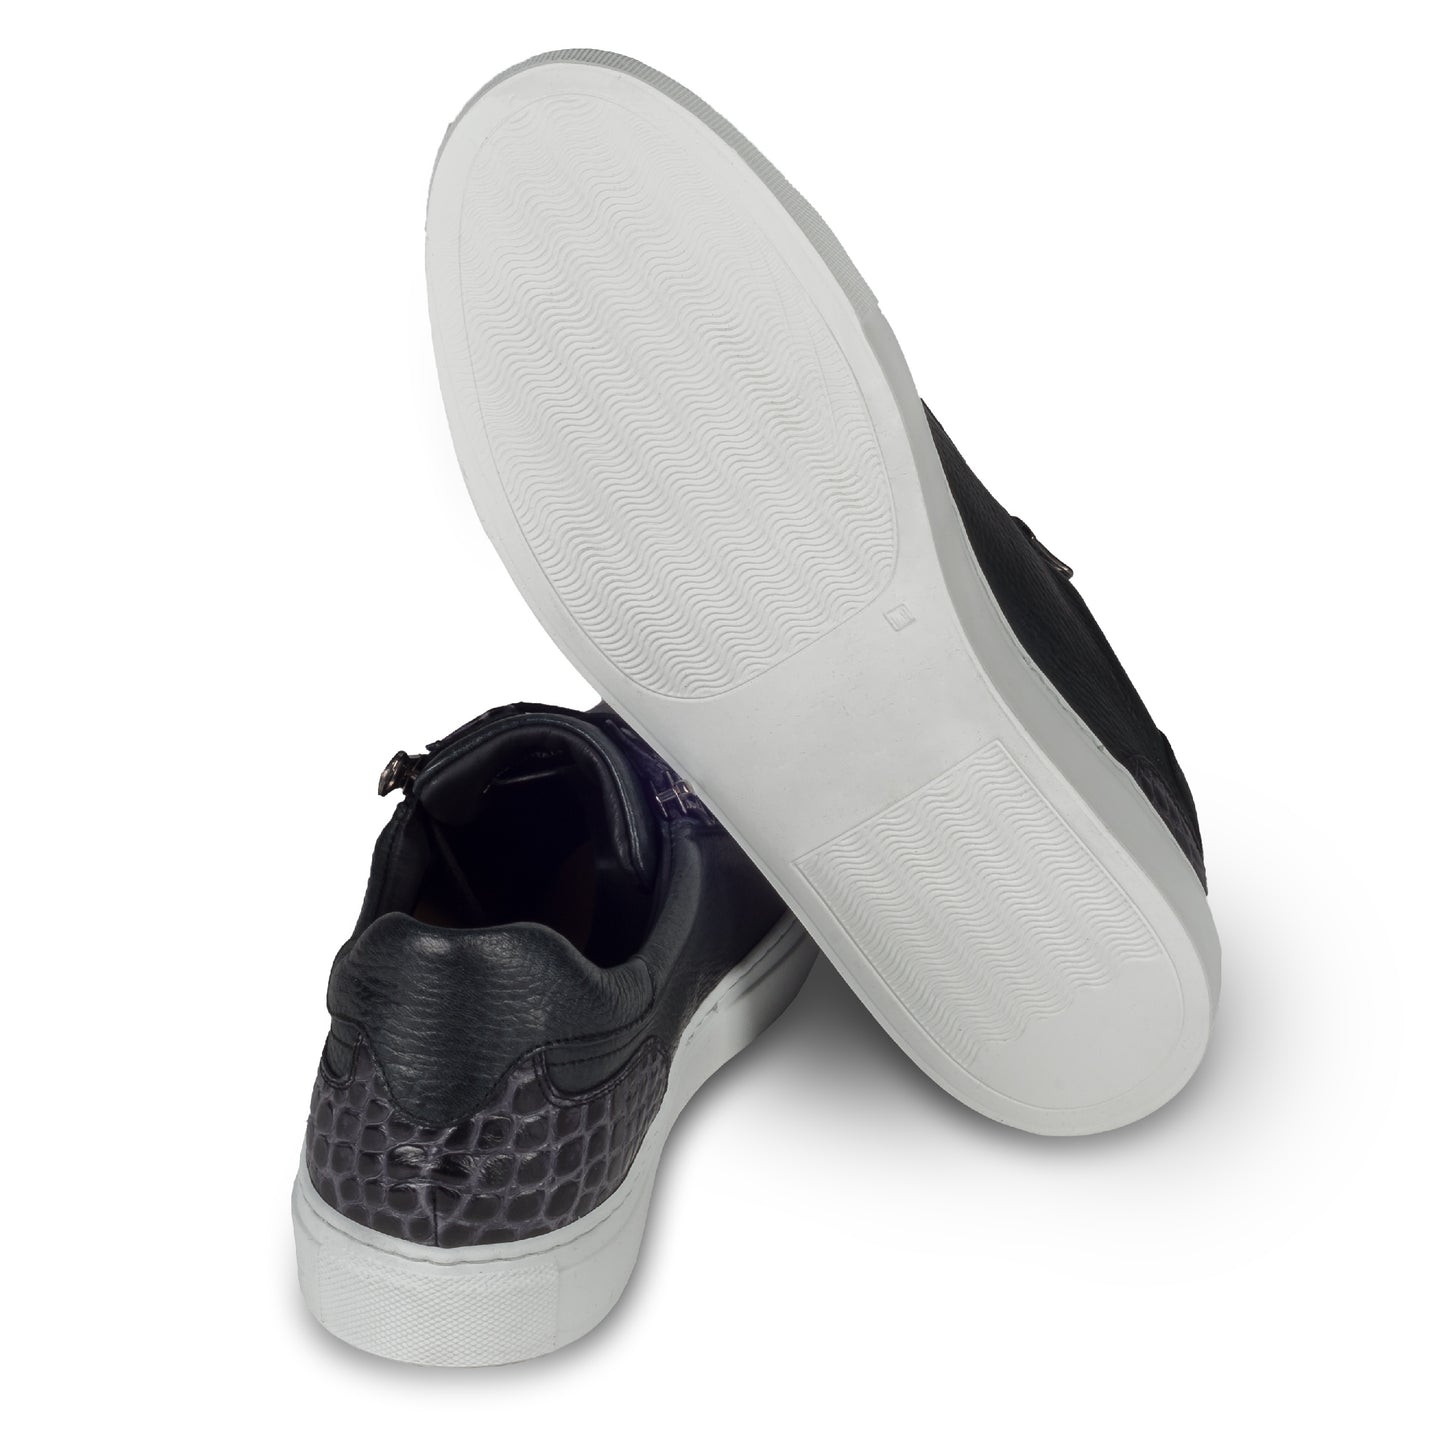 Lorenzi Italienische Herren Kalbsleder Sneaker in schwarz mit Kroko-Optik und weißer Sohle. Handgefertigt. Ansicht der Ferse und Sohlenunterseite.